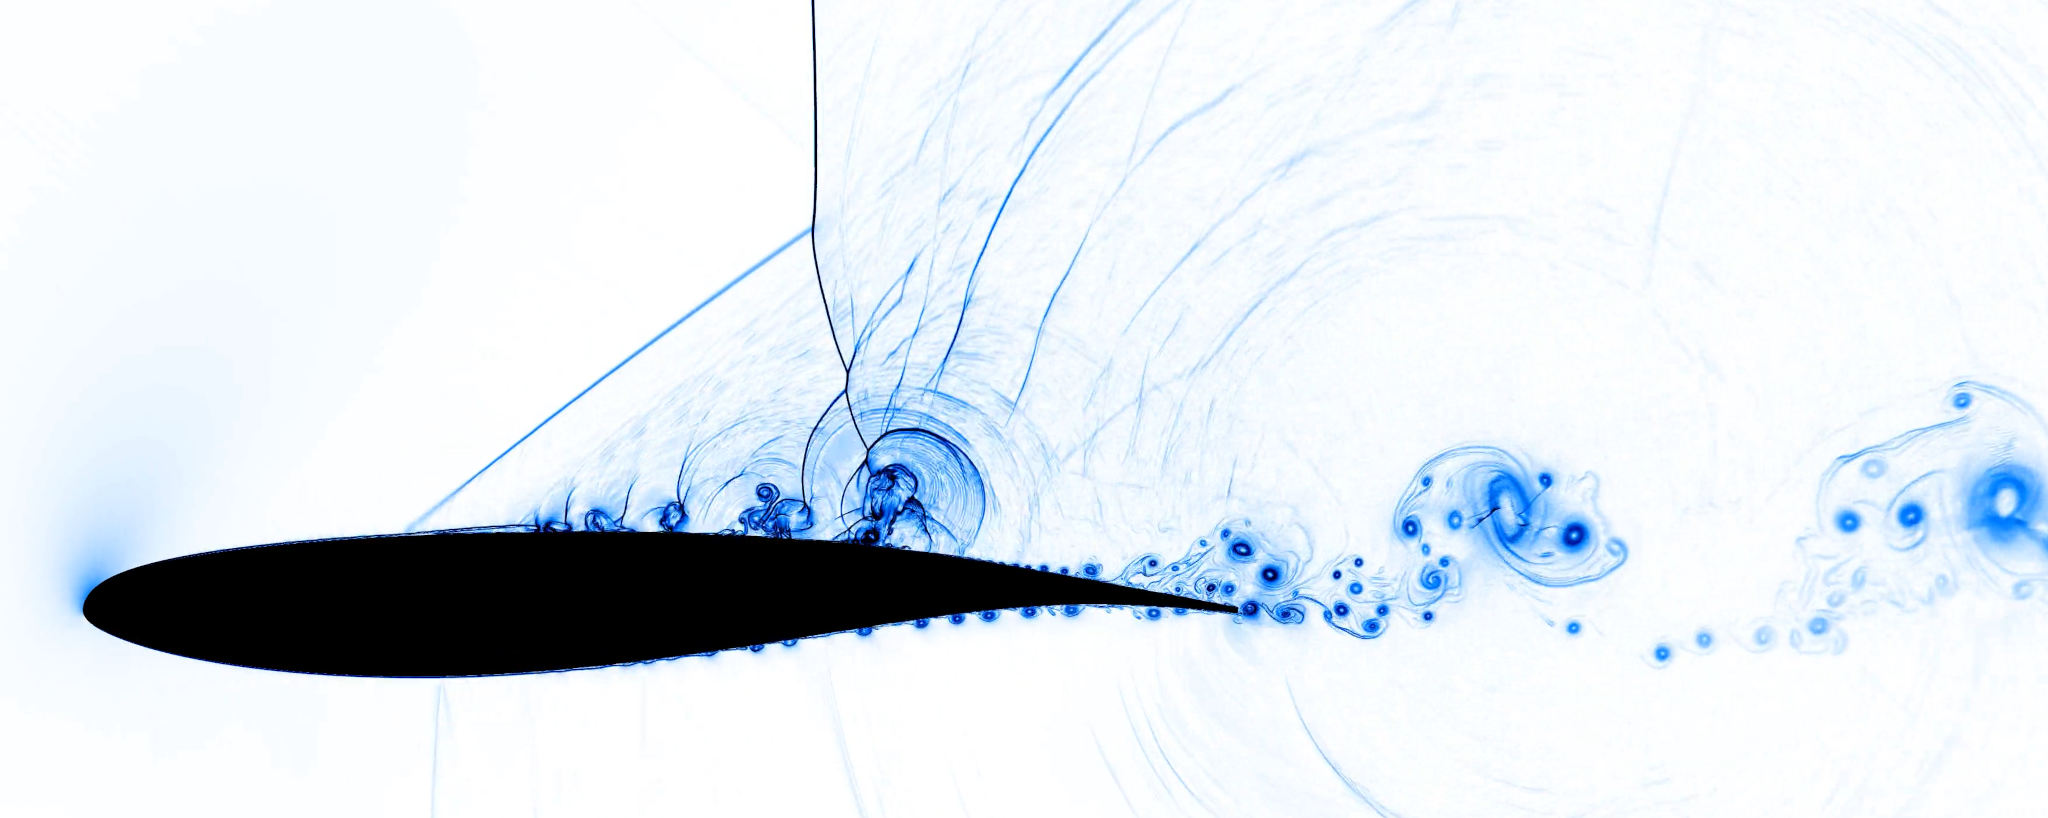 Image of Mach 3 Euler flow past cylinder